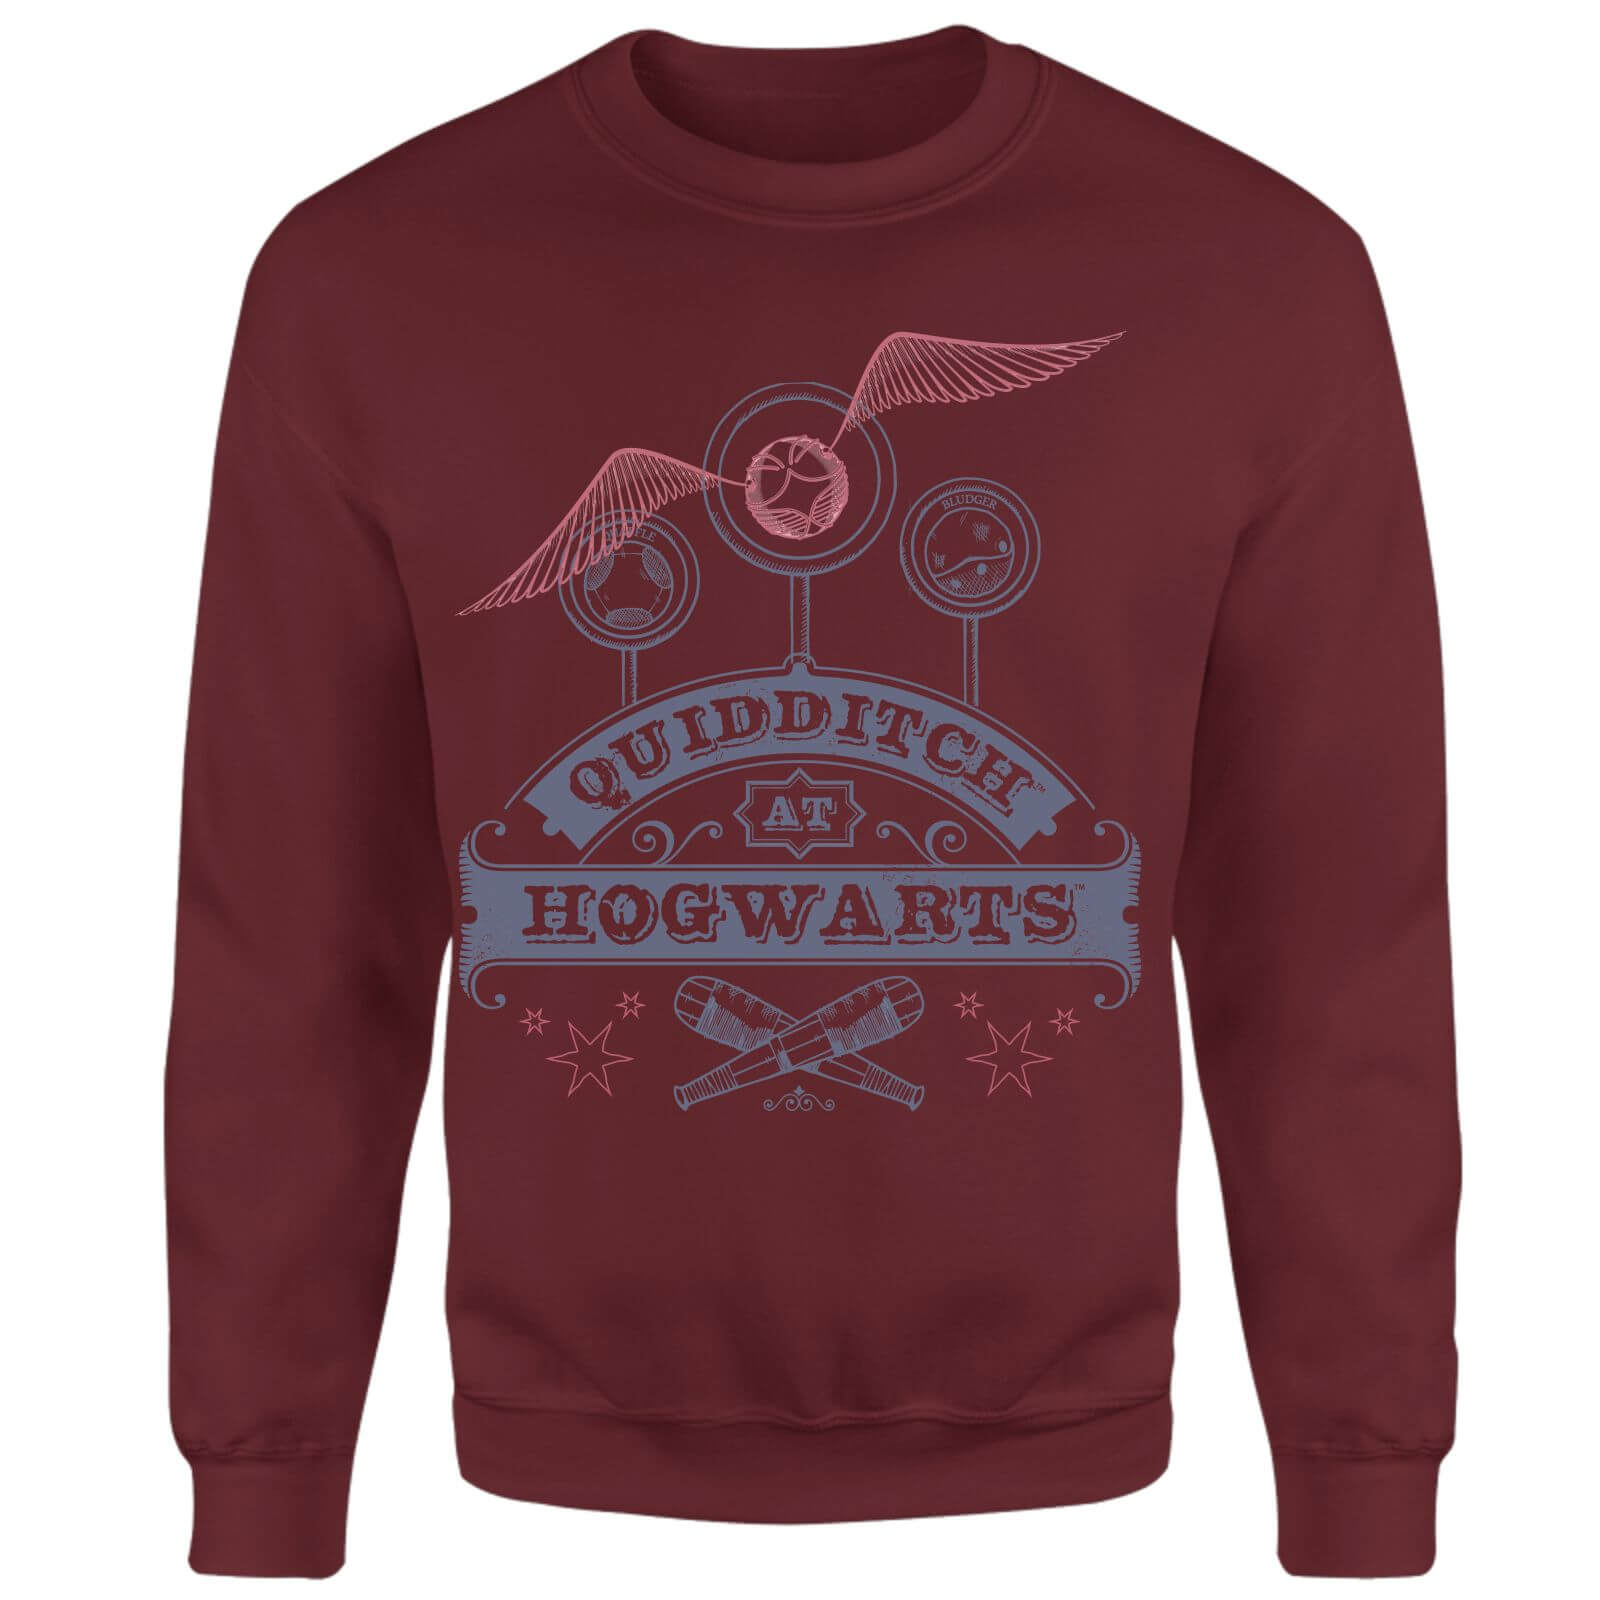 Harry Potter Quidditch At Hogwarts Sweatshirt - Burgundy - M - Burgundy